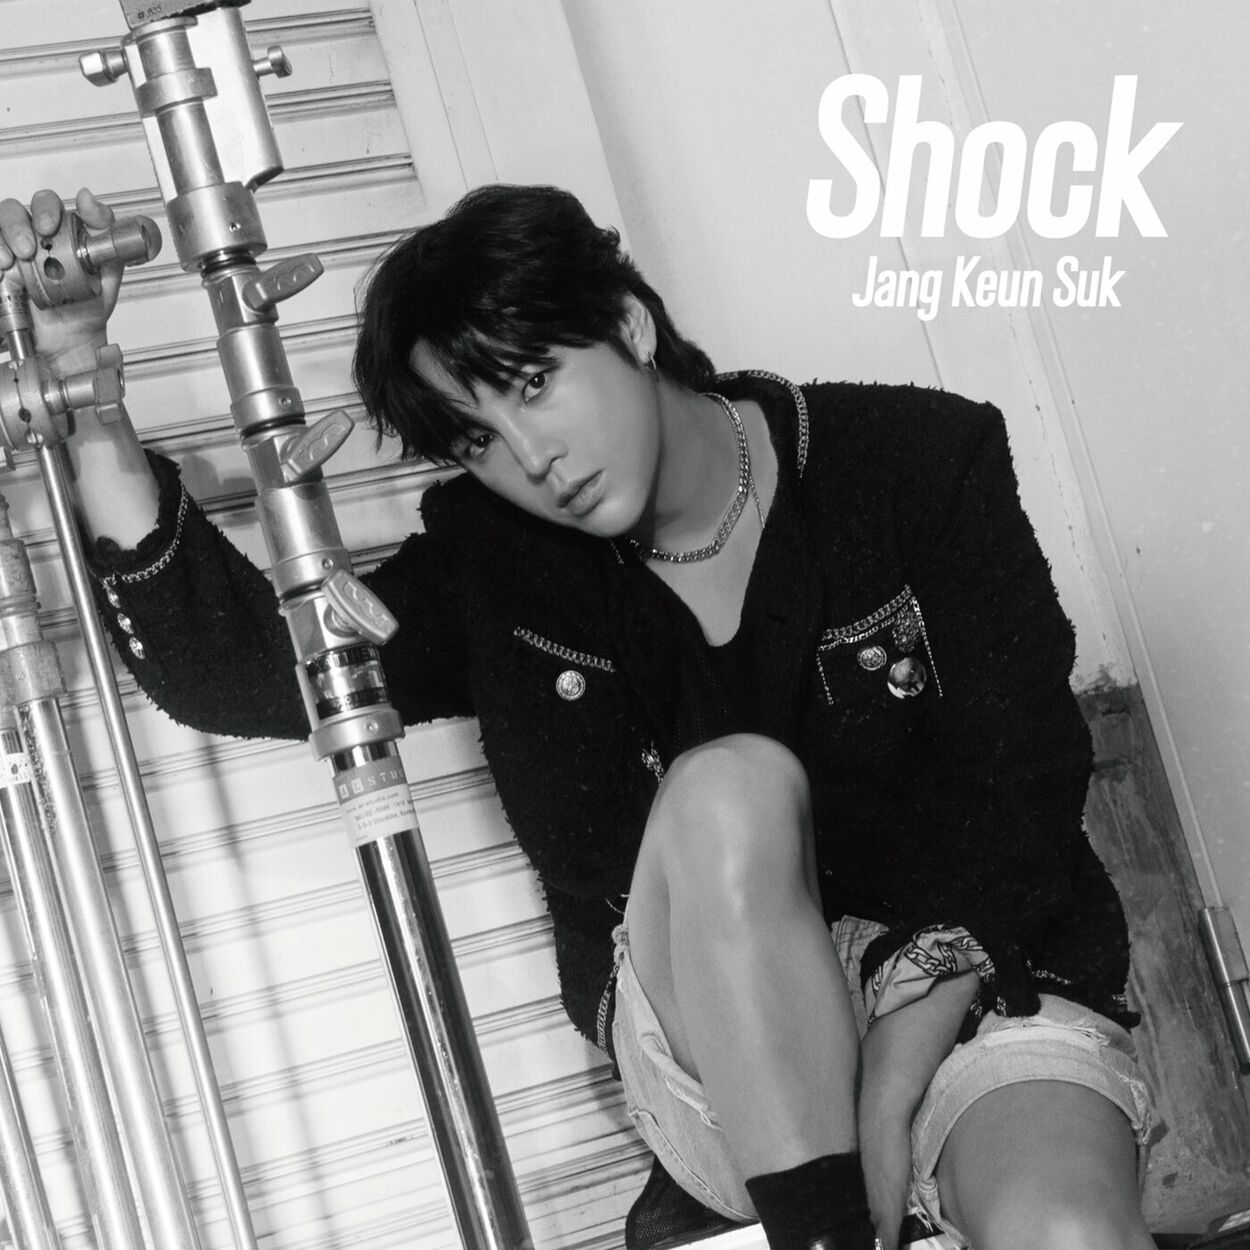 Jang Keun Suk – Shock – EP